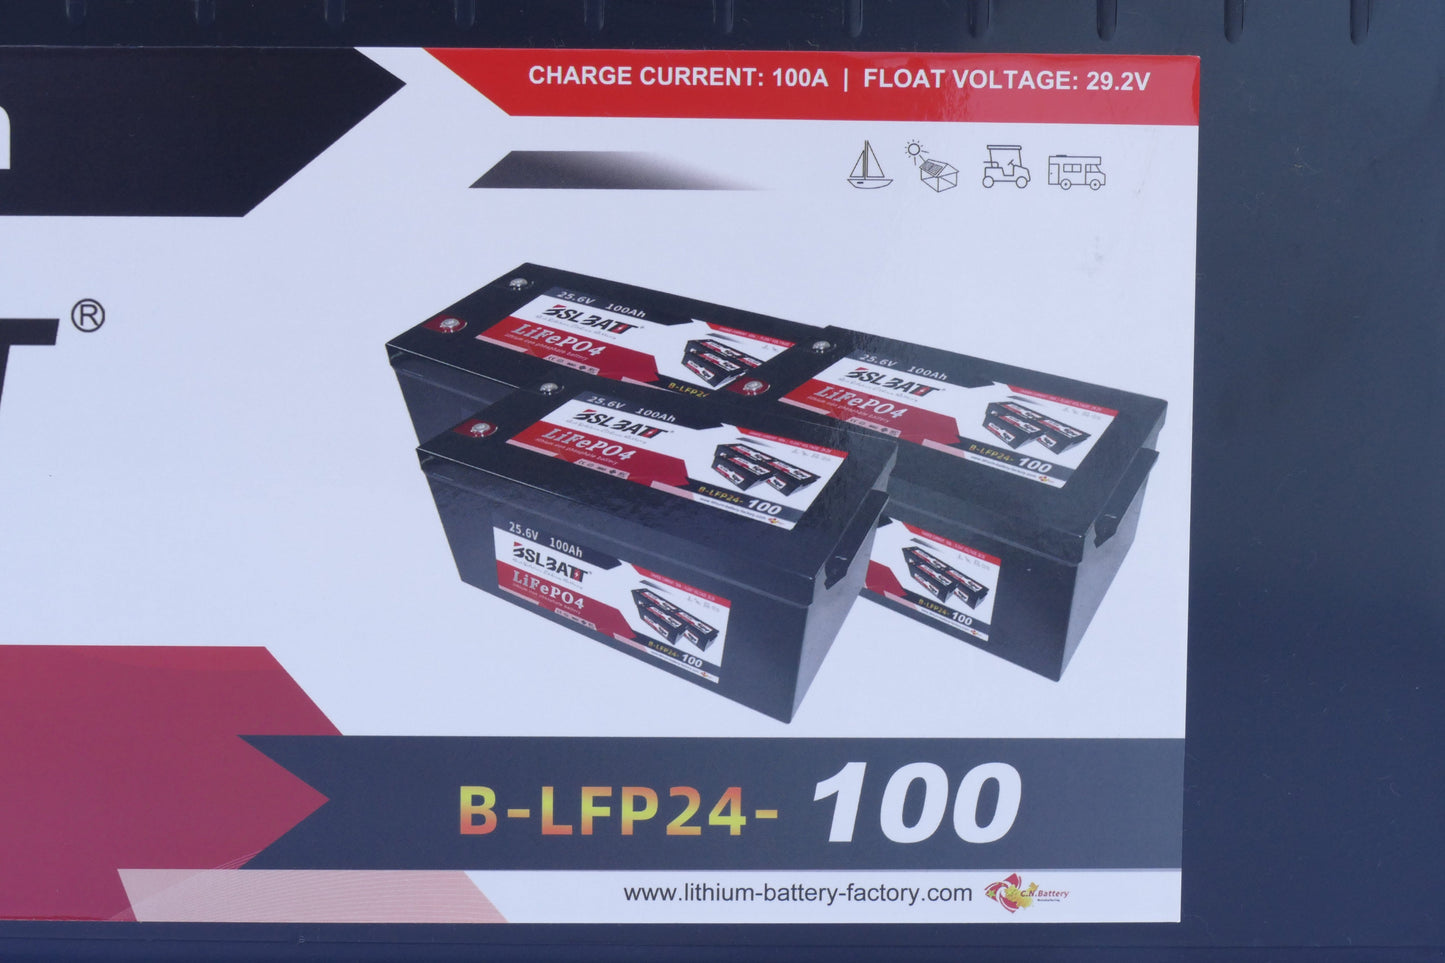 BSLBATT 24V 100AH Lithium Battery (bluetooth)